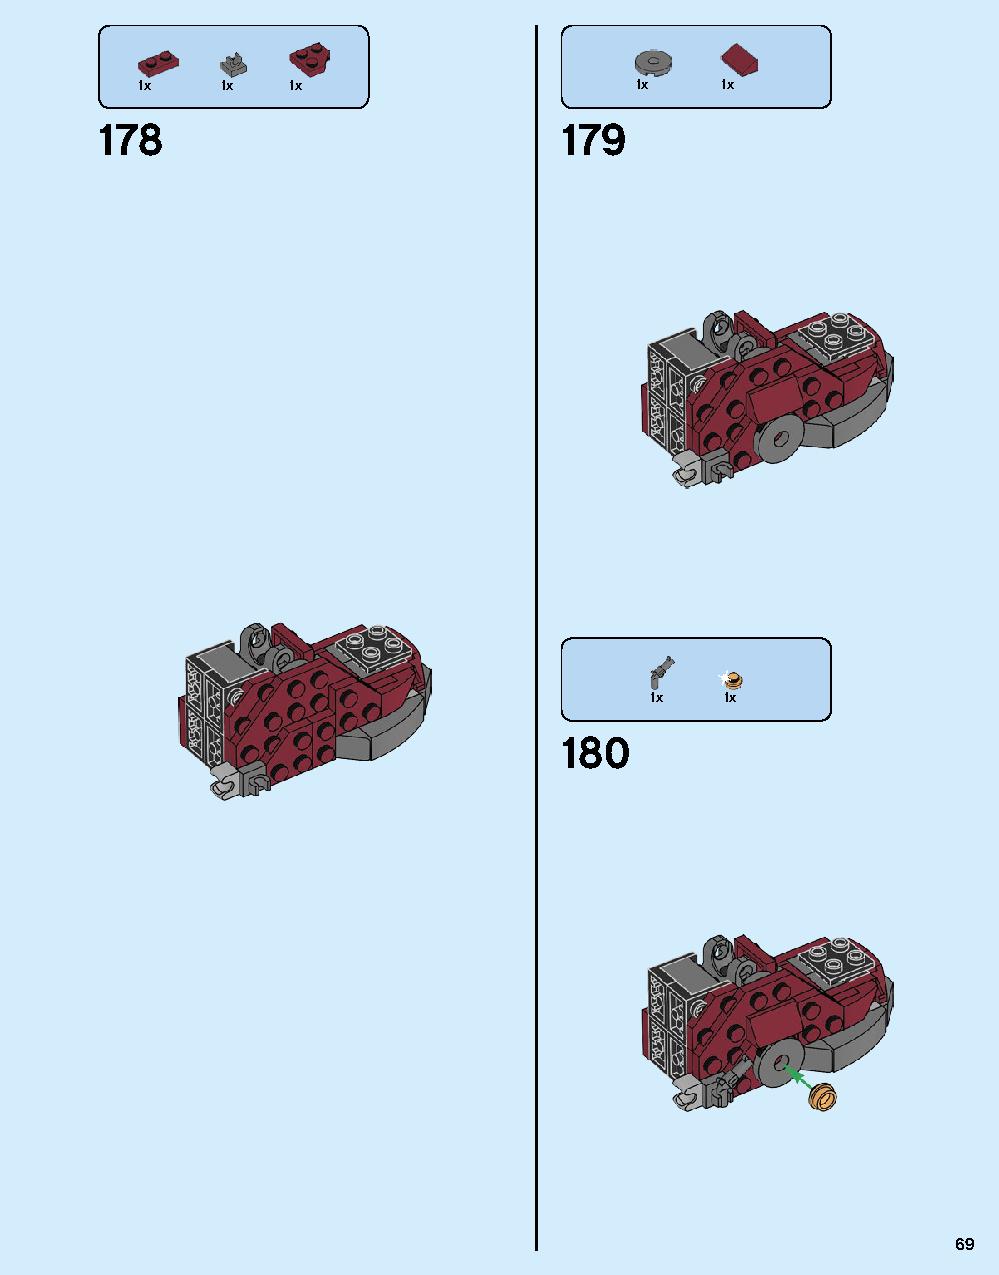 ハルクバスター：ウルトロン・エディション 76105 レゴの商品情報 レゴの説明書・組立方法 69 page